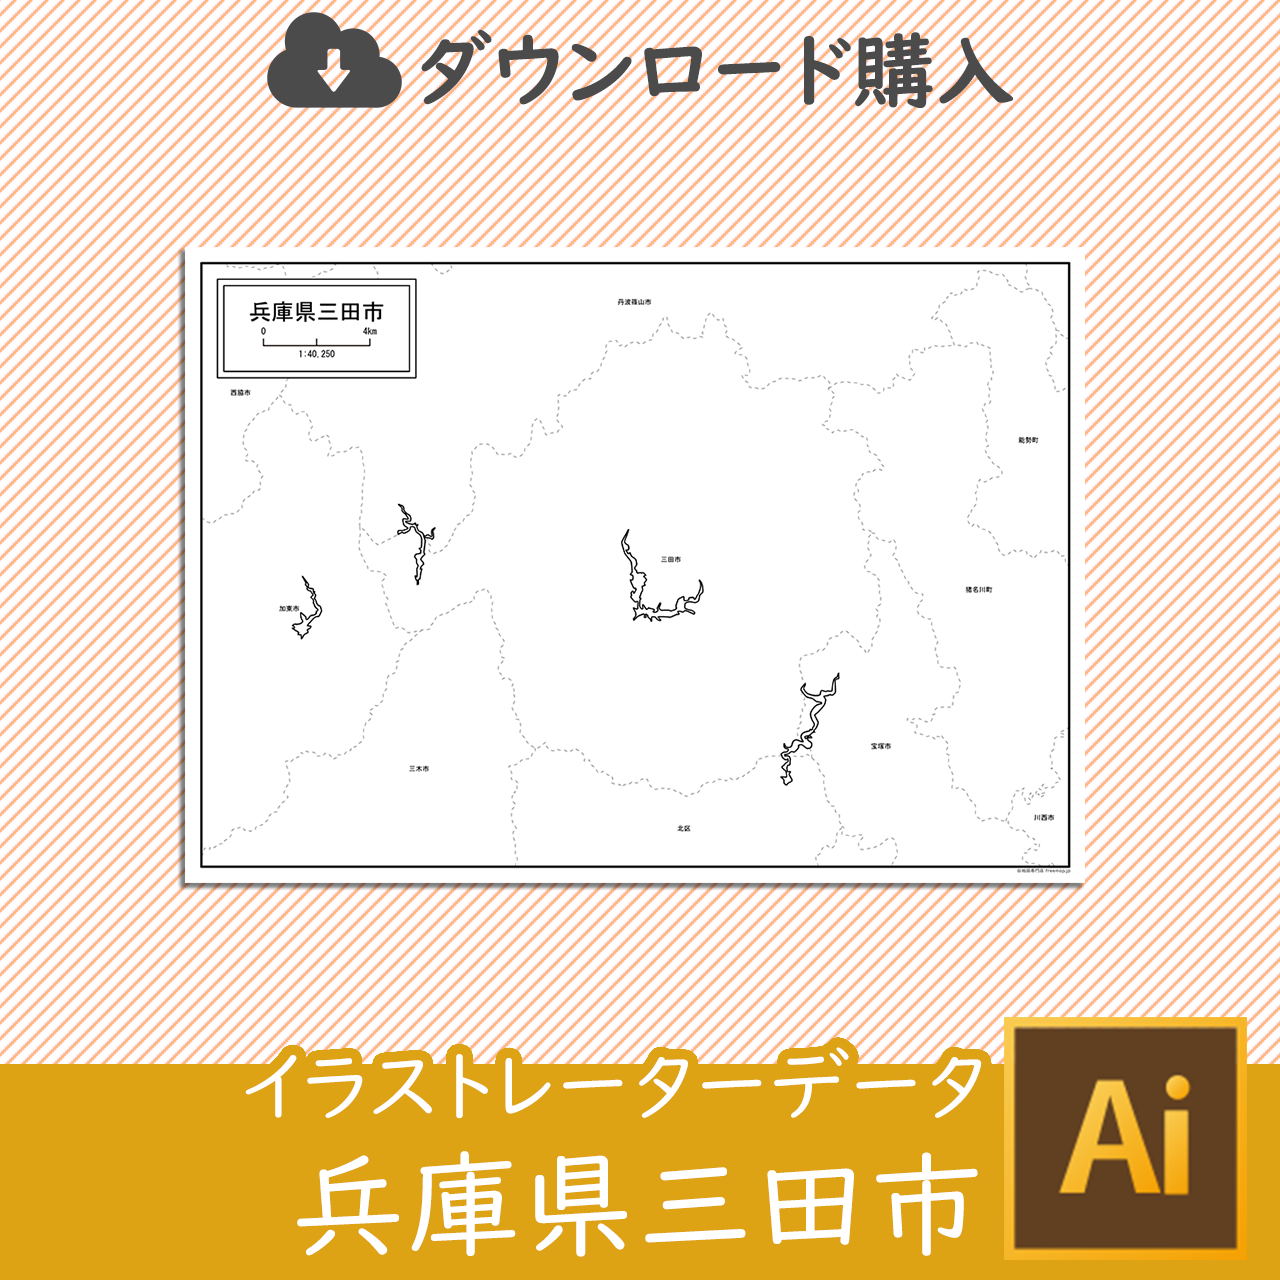 三田市のaiデータのサムネイル画像